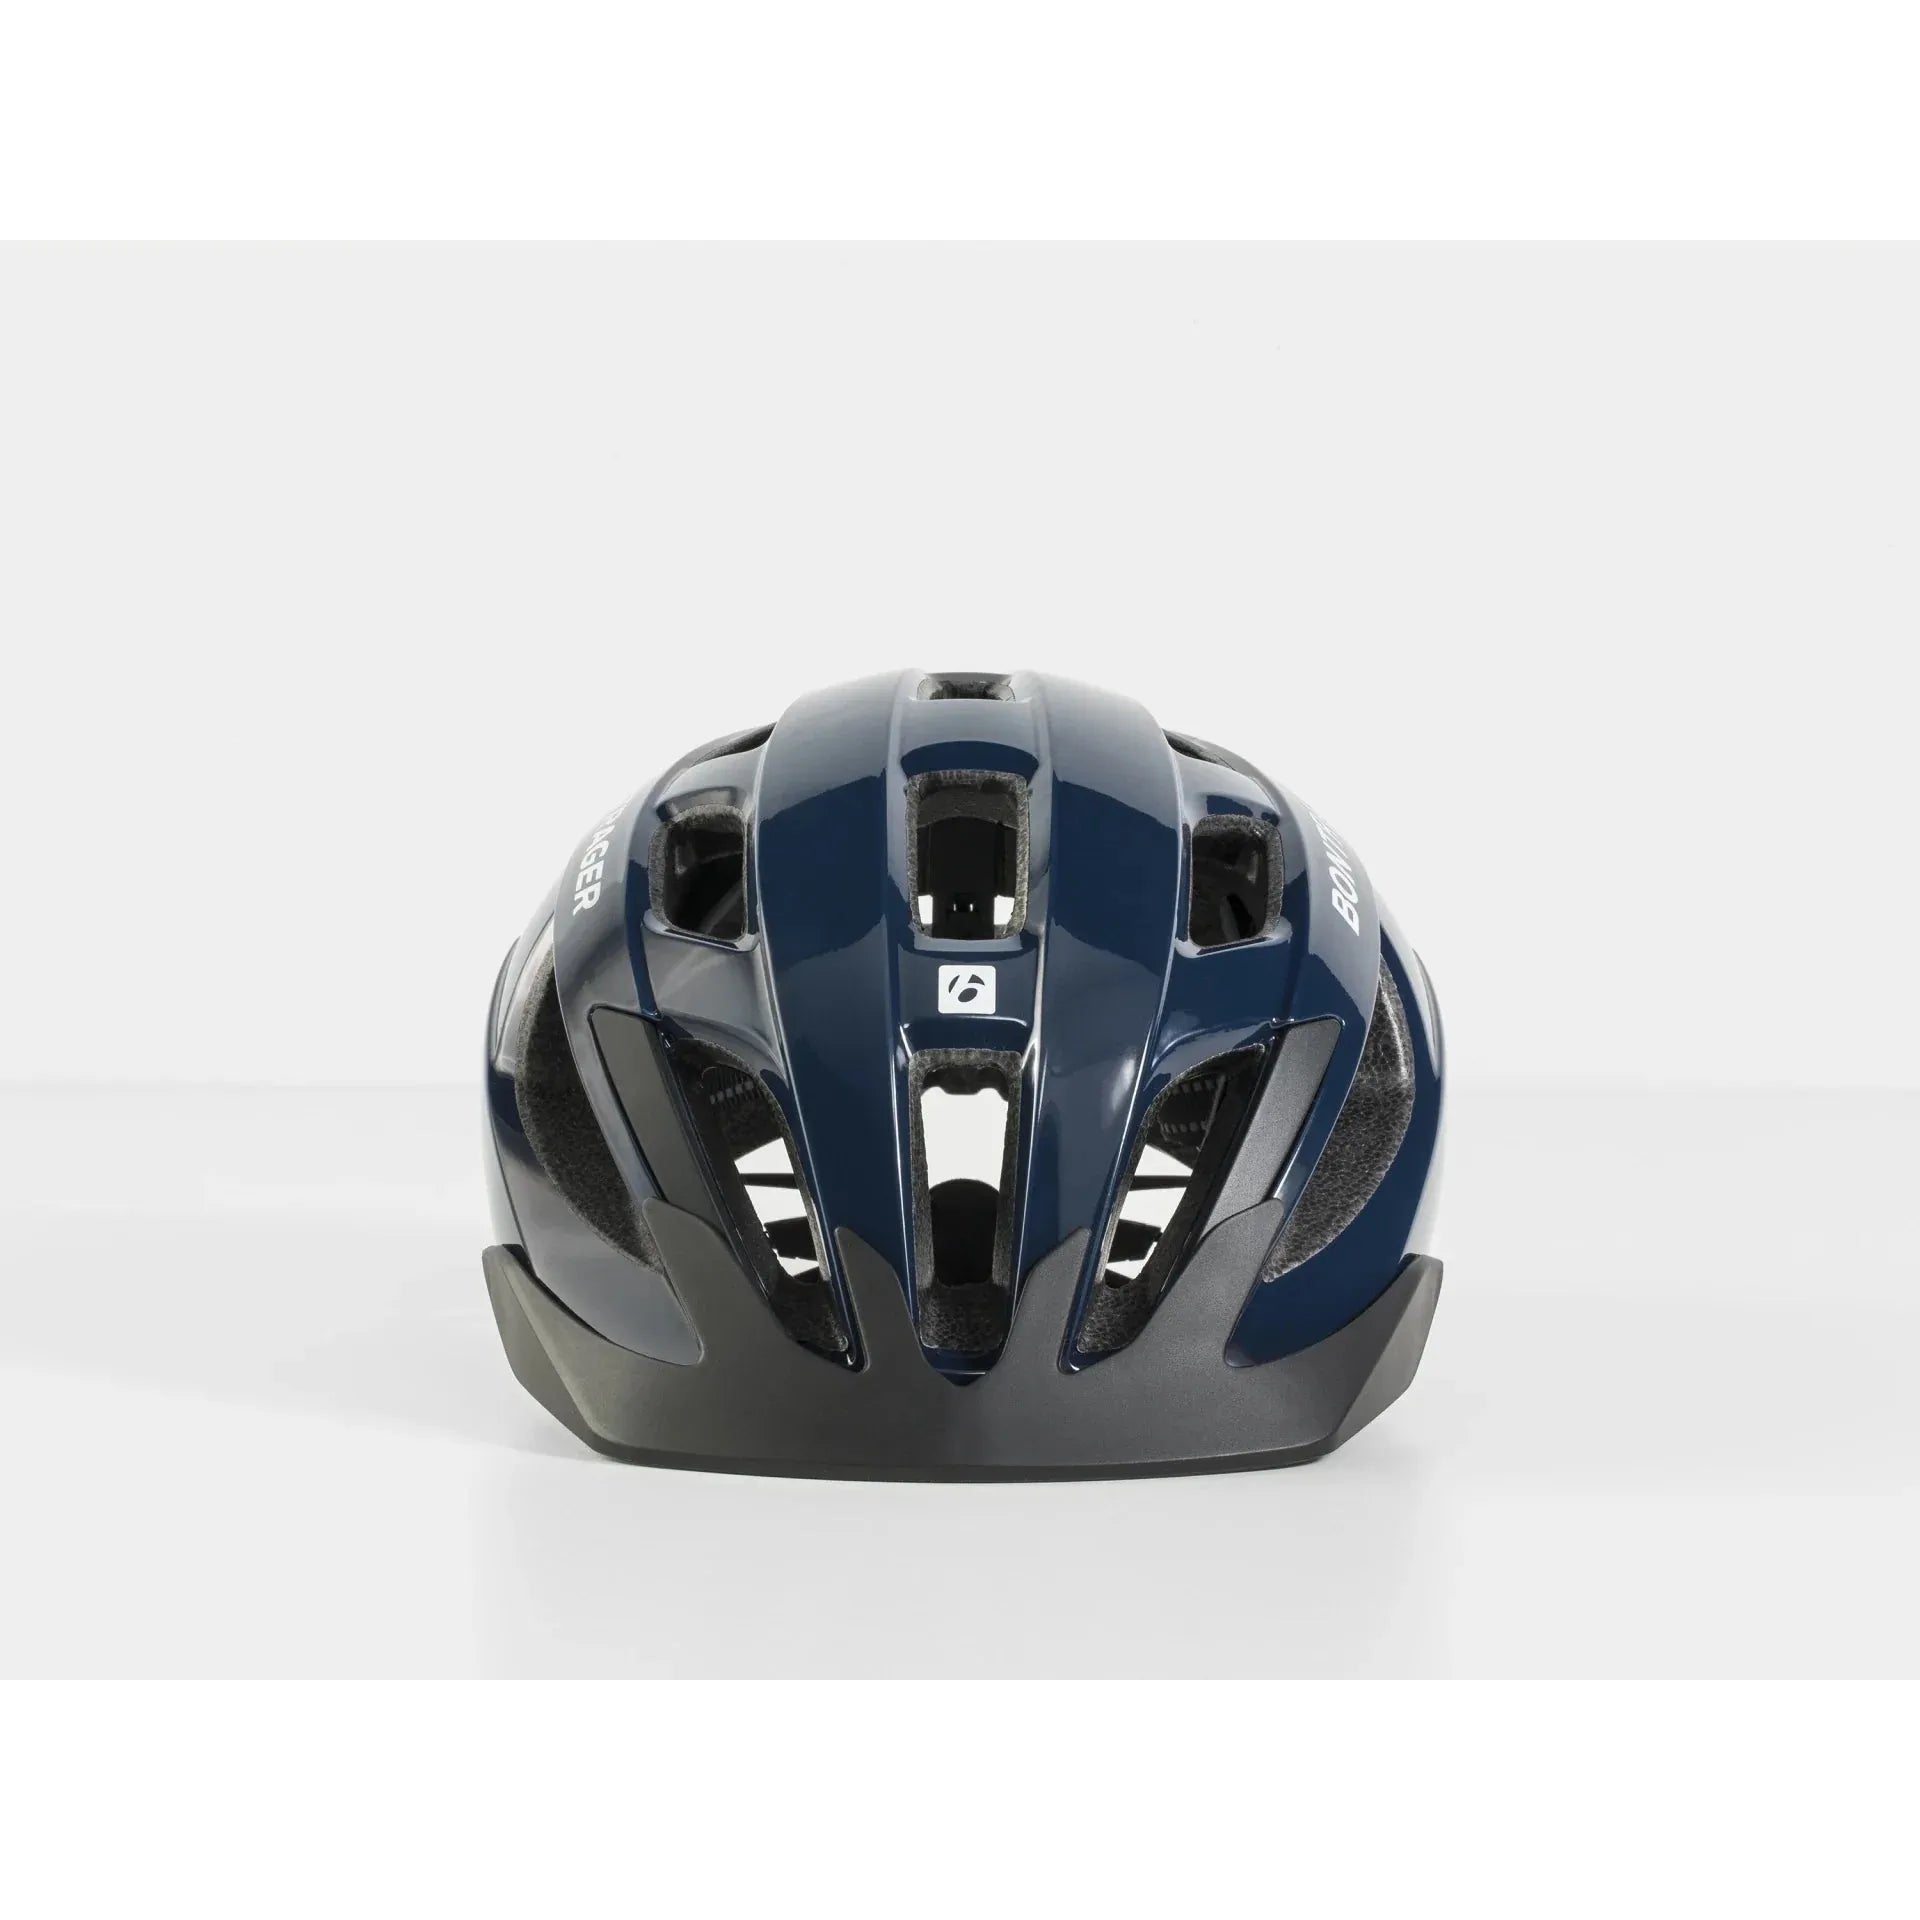 Bontrager Helmet Solstice Bike Helmet Navy